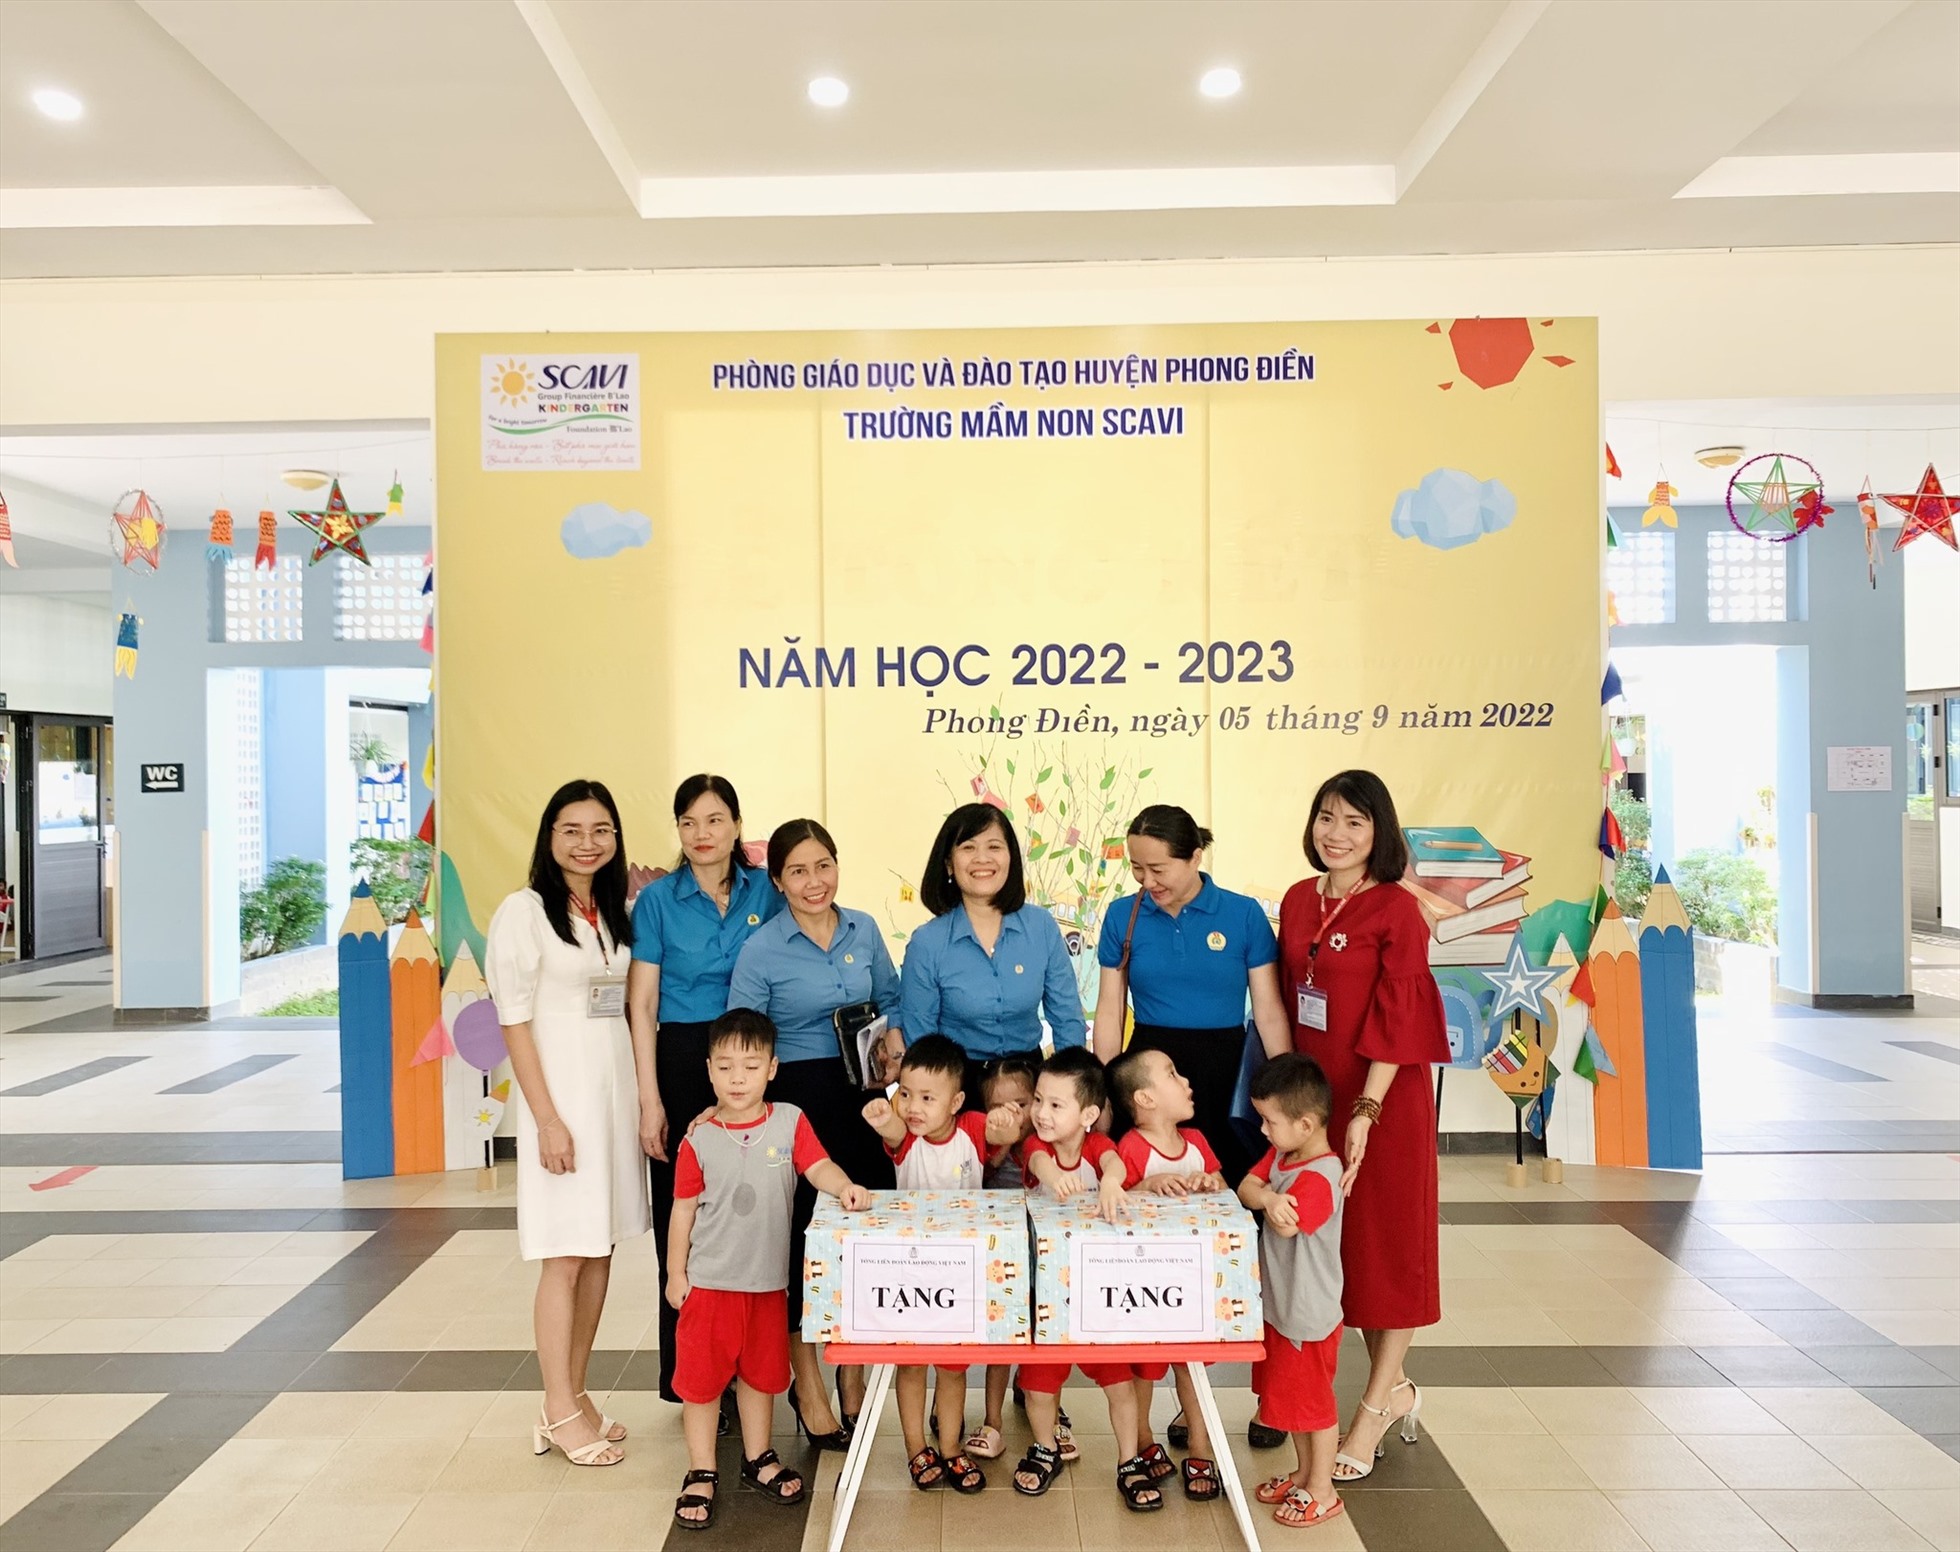 Bà Đỗ Hồng Vân - Quyền Trưởng Ban Nữ công Tổng LĐLĐ Việt Nam cùng đoàn đã đến khảo sát, tham quan lớp học và tặng quà cho các em nhỏ tại Trường mầm non SCAVI (Khu công nghiệp Phong Điền, huyện Phong Điền).